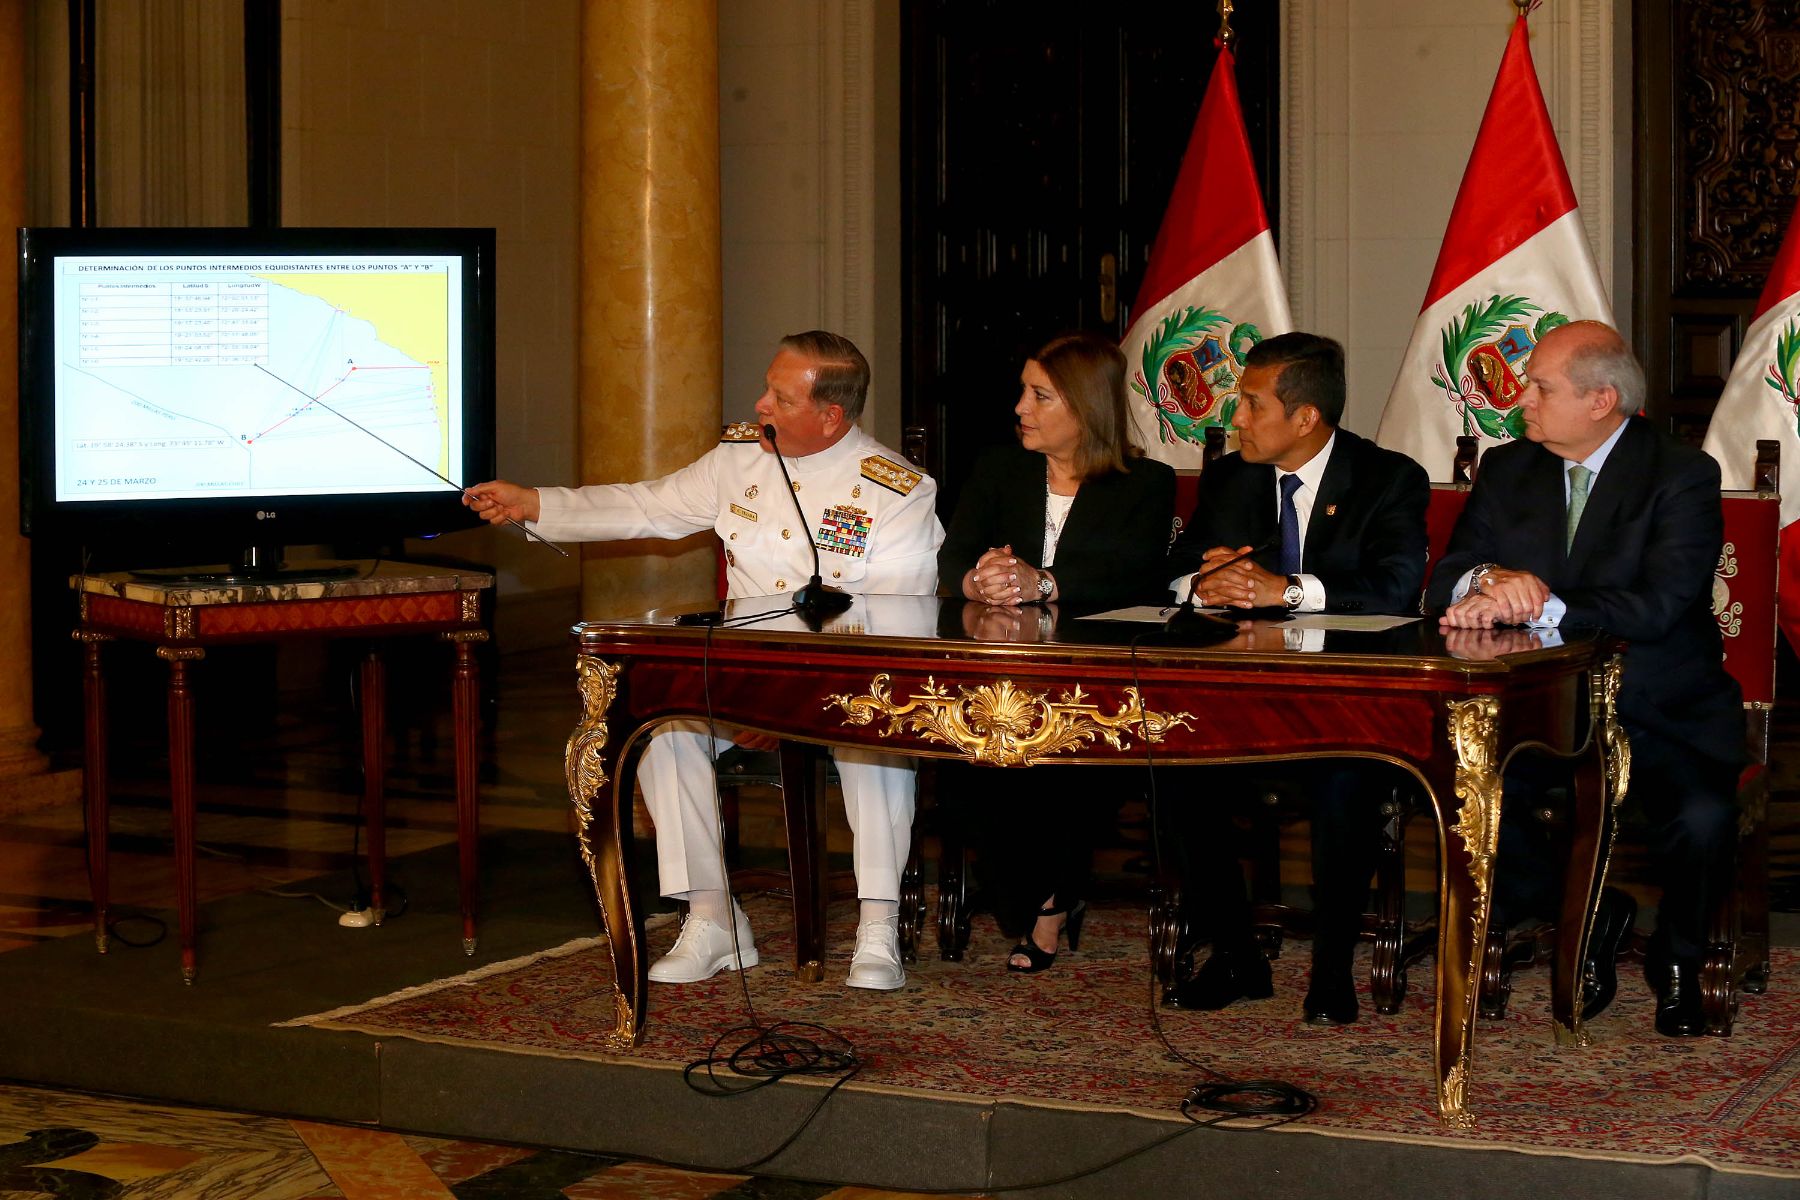 Jefe del Estado, Ollanta Humala, recibió en Palacio de Gobierno las conclusiones del trabajo realizado por los equipos peruano y chileno para fijar las coordenadas exactas de la frontera marítima.